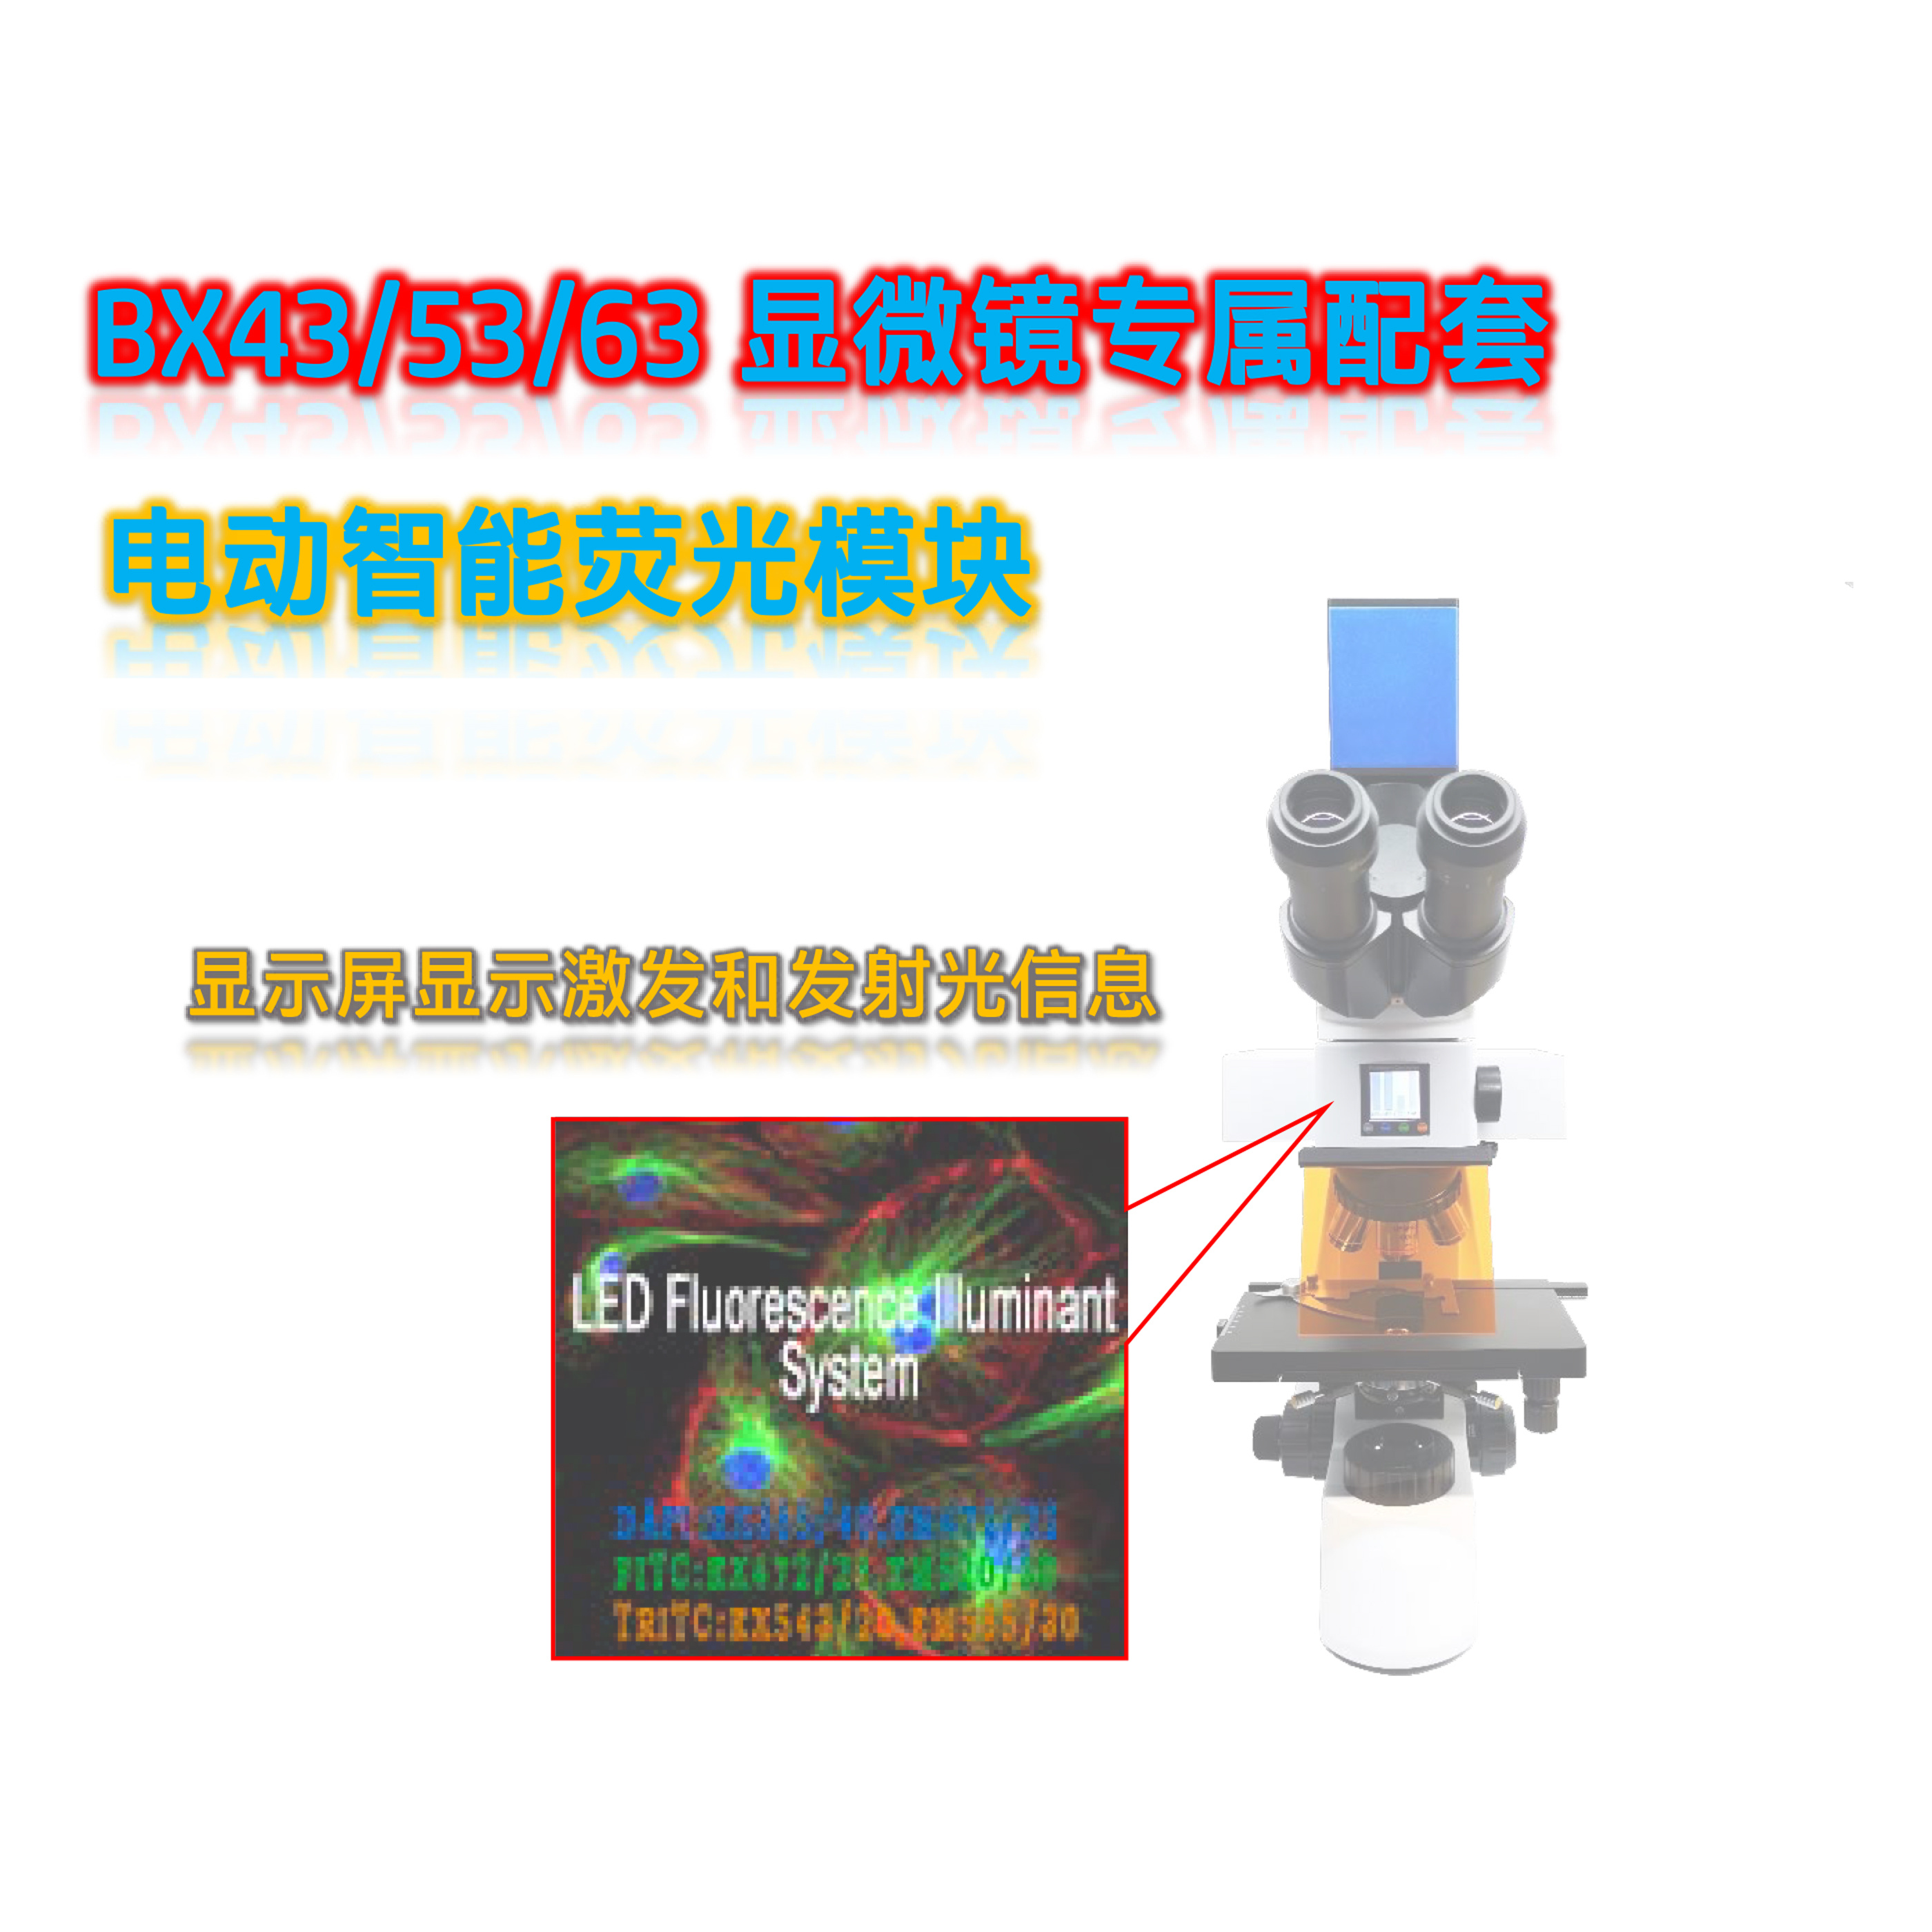  奥林巴斯正置荧光模块显微镜BX43配套荧光附件BX-UVG-E